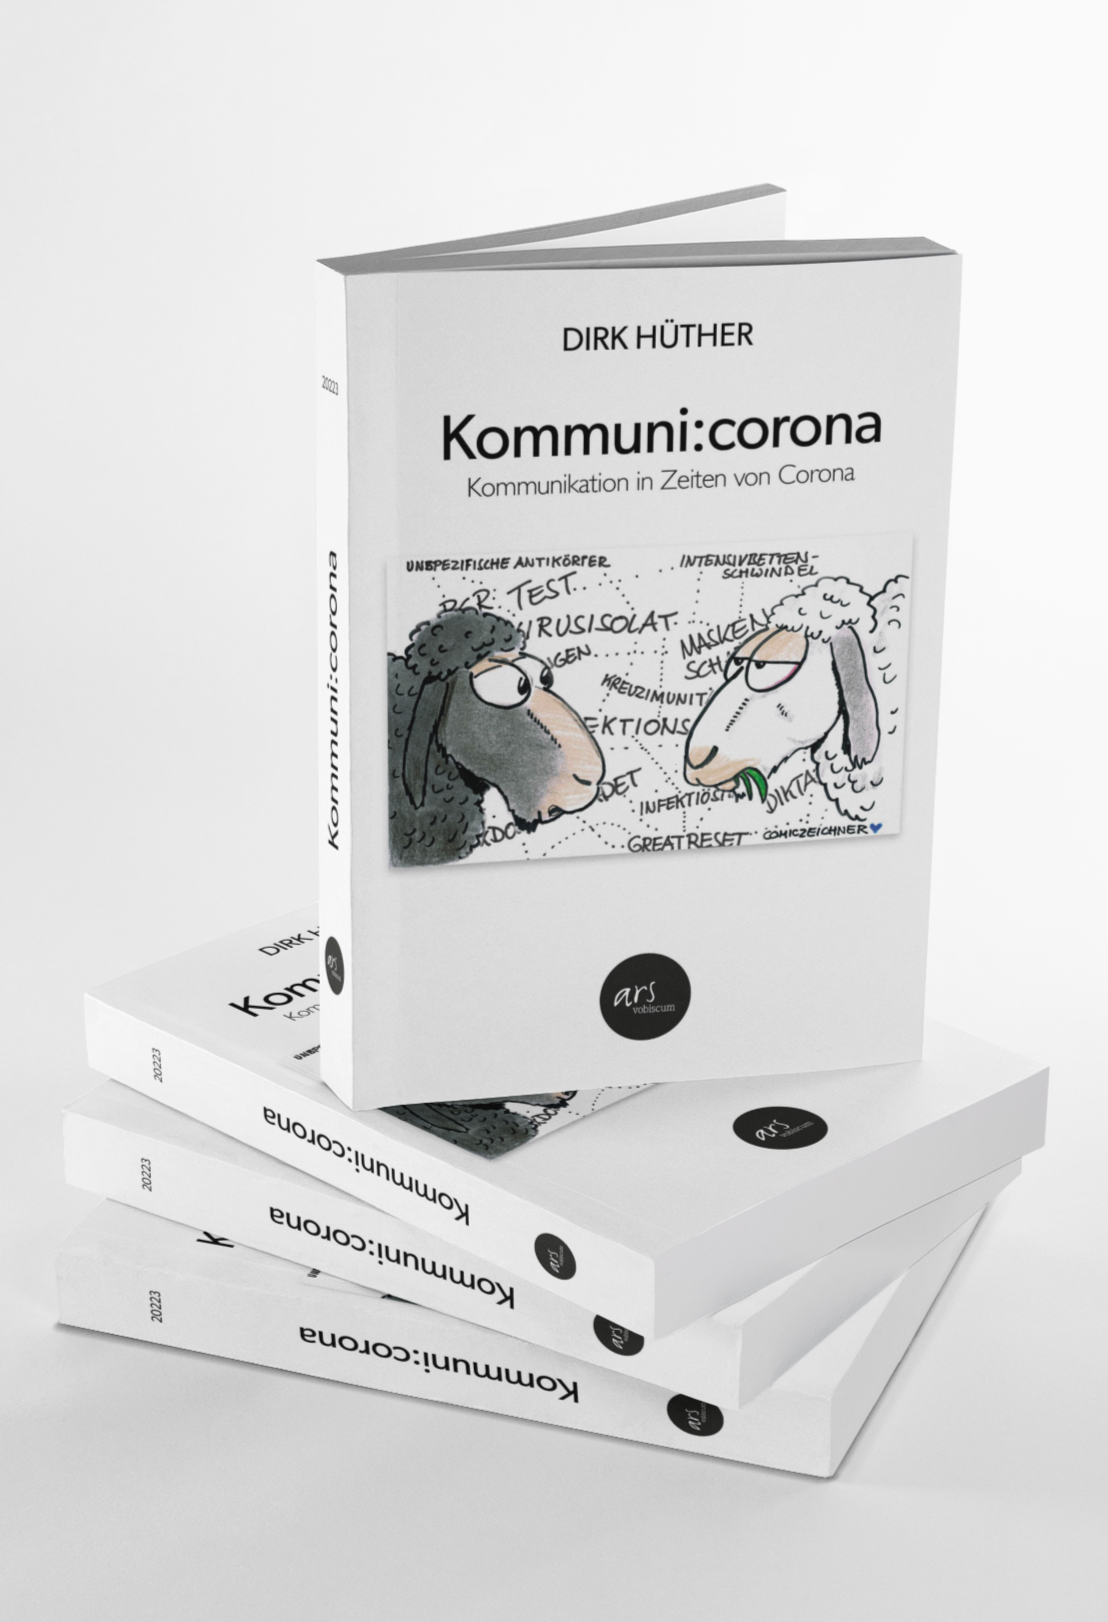 »Kommuni:corona, Kommunikation in Zeiten von Corona« von Dirk Hüther